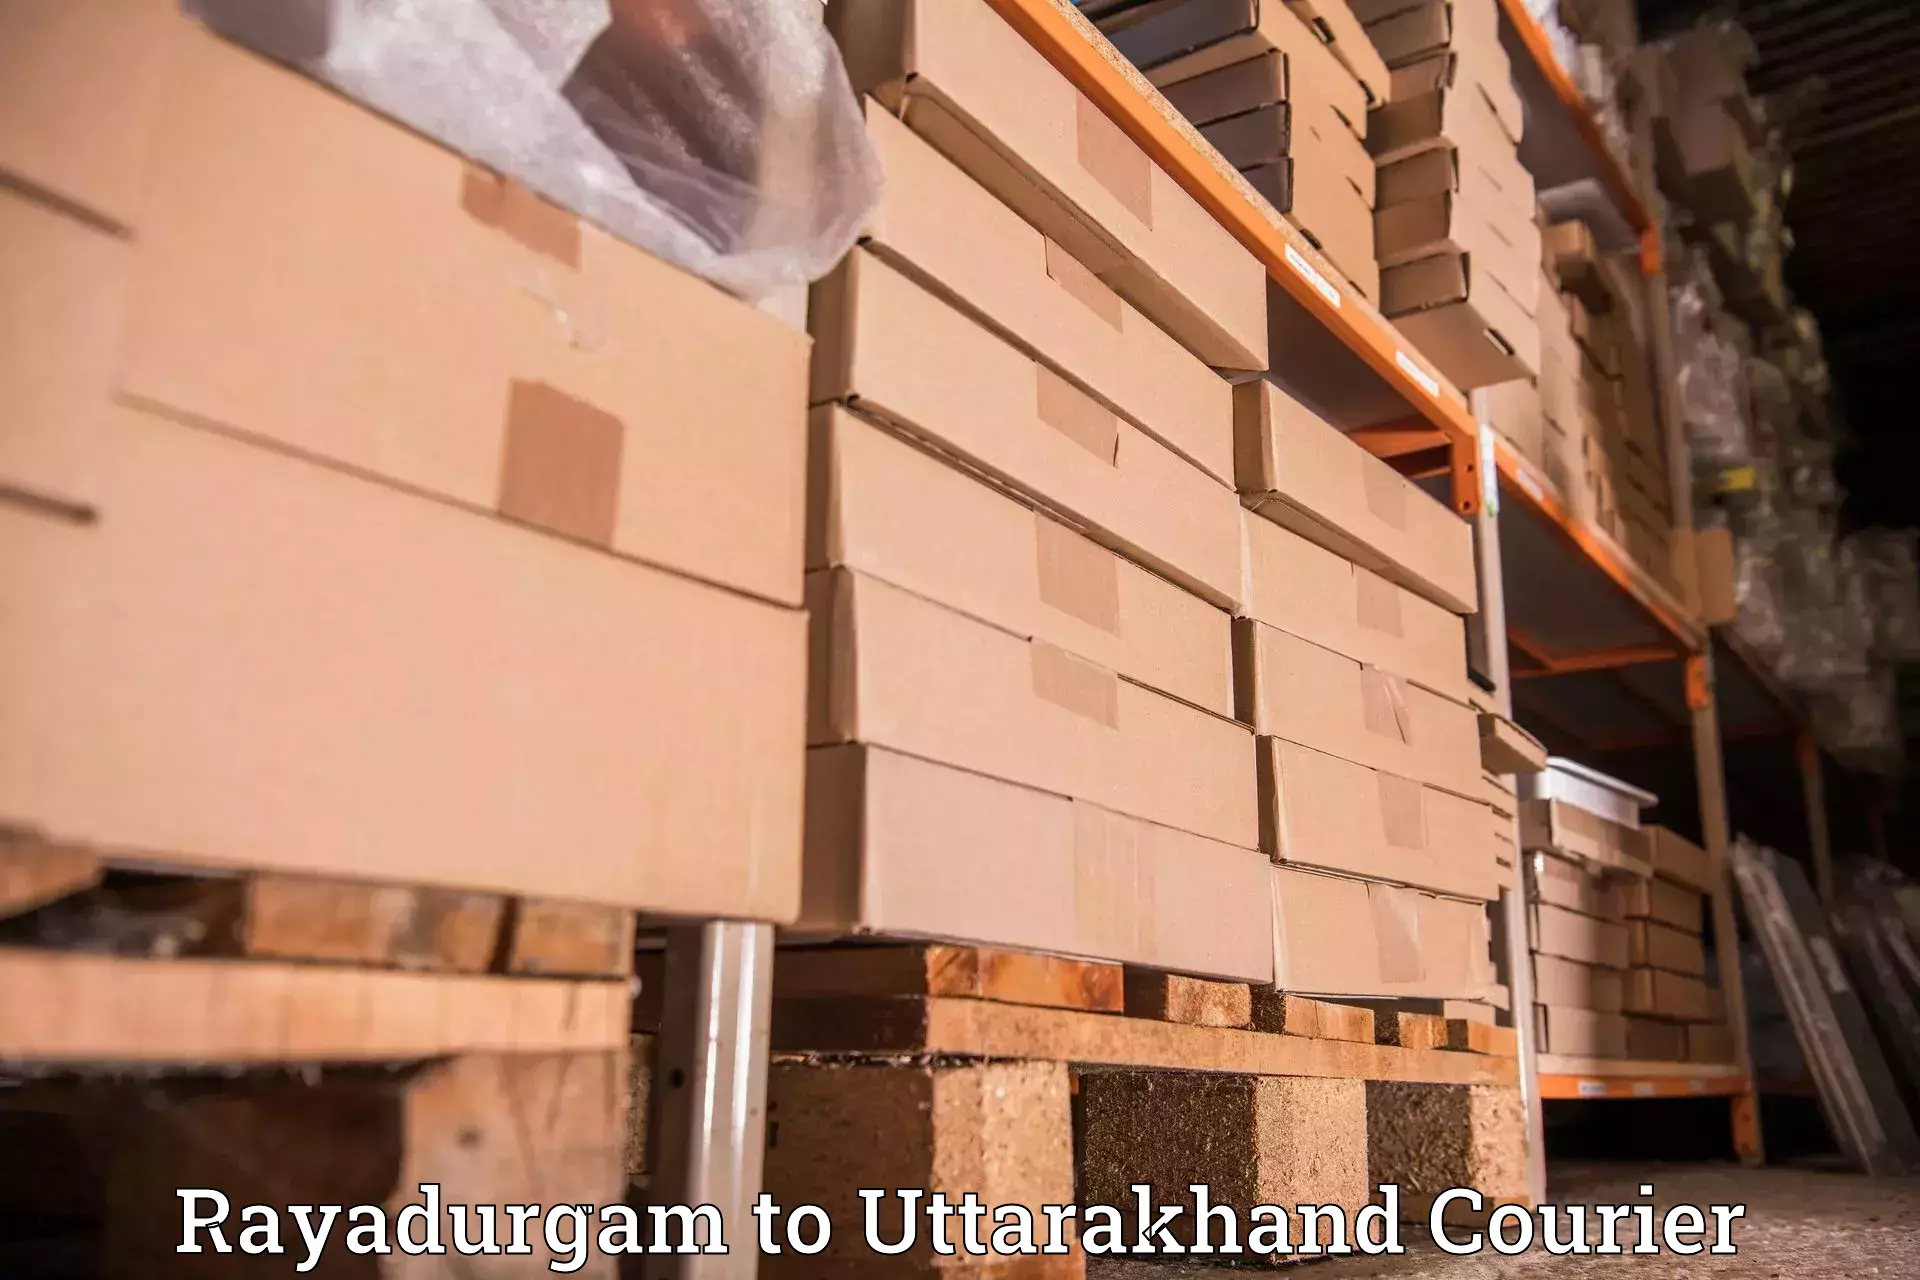 Professional courier handling Rayadurgam to Uttarakhand